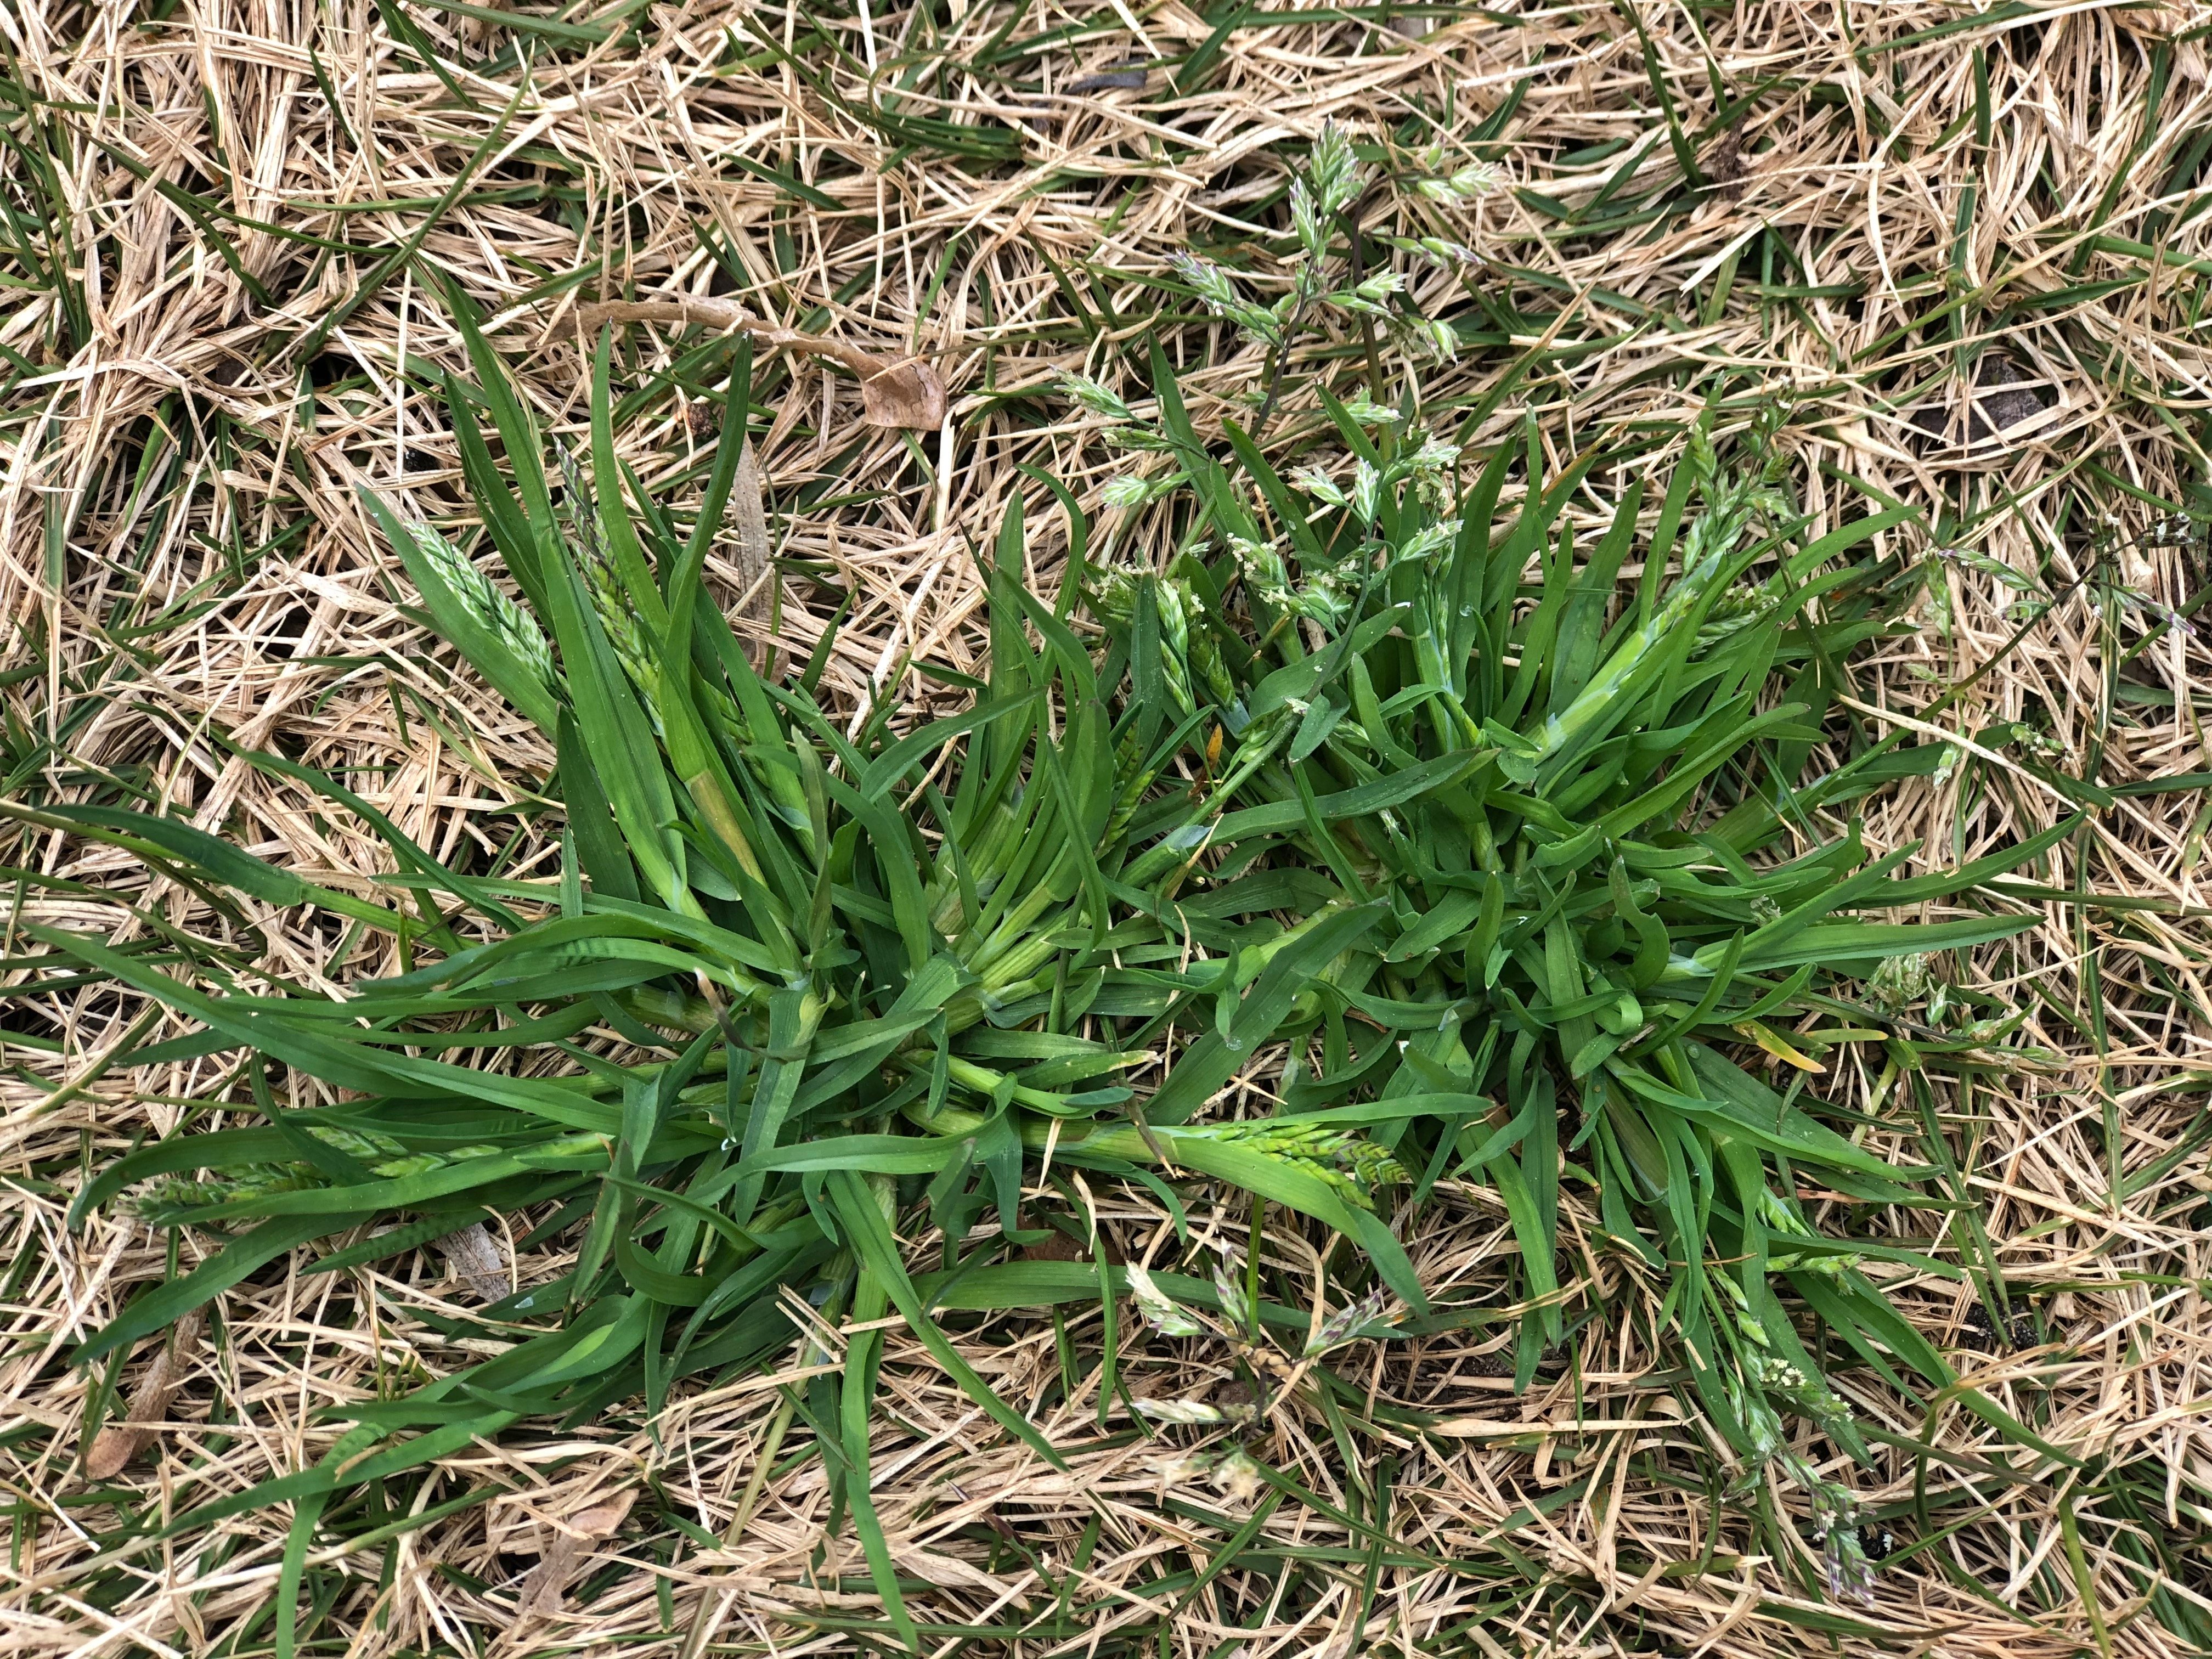 Poa annua - annual poa grass weed in Zeon zoysia